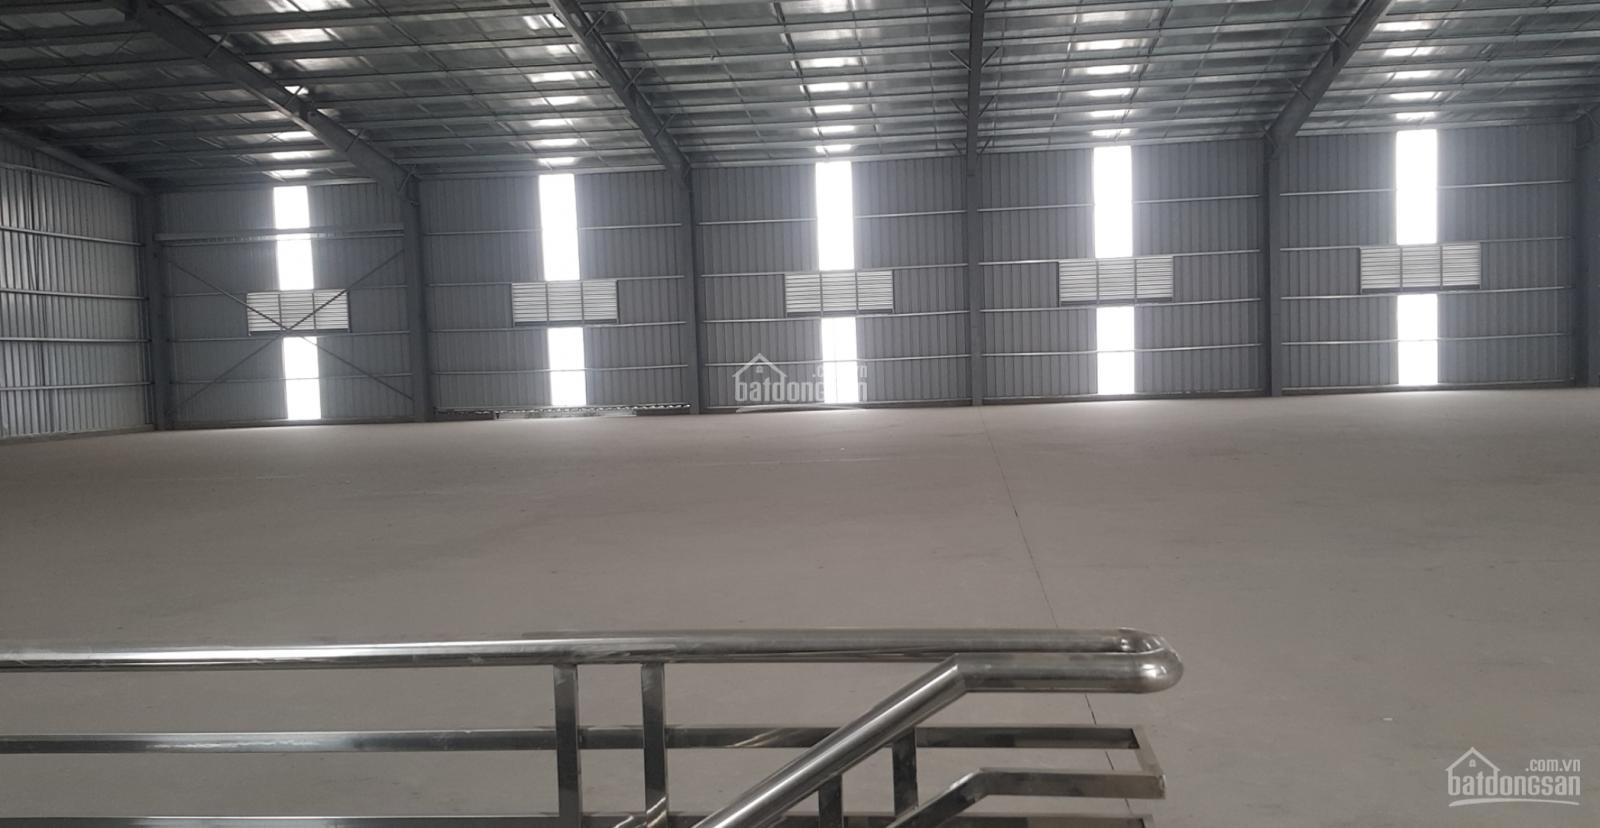 Chính chủ cho thuê nhà xưởng mới hoàn thiện 100% gần KCN Văn Giang, LH: 0983505656